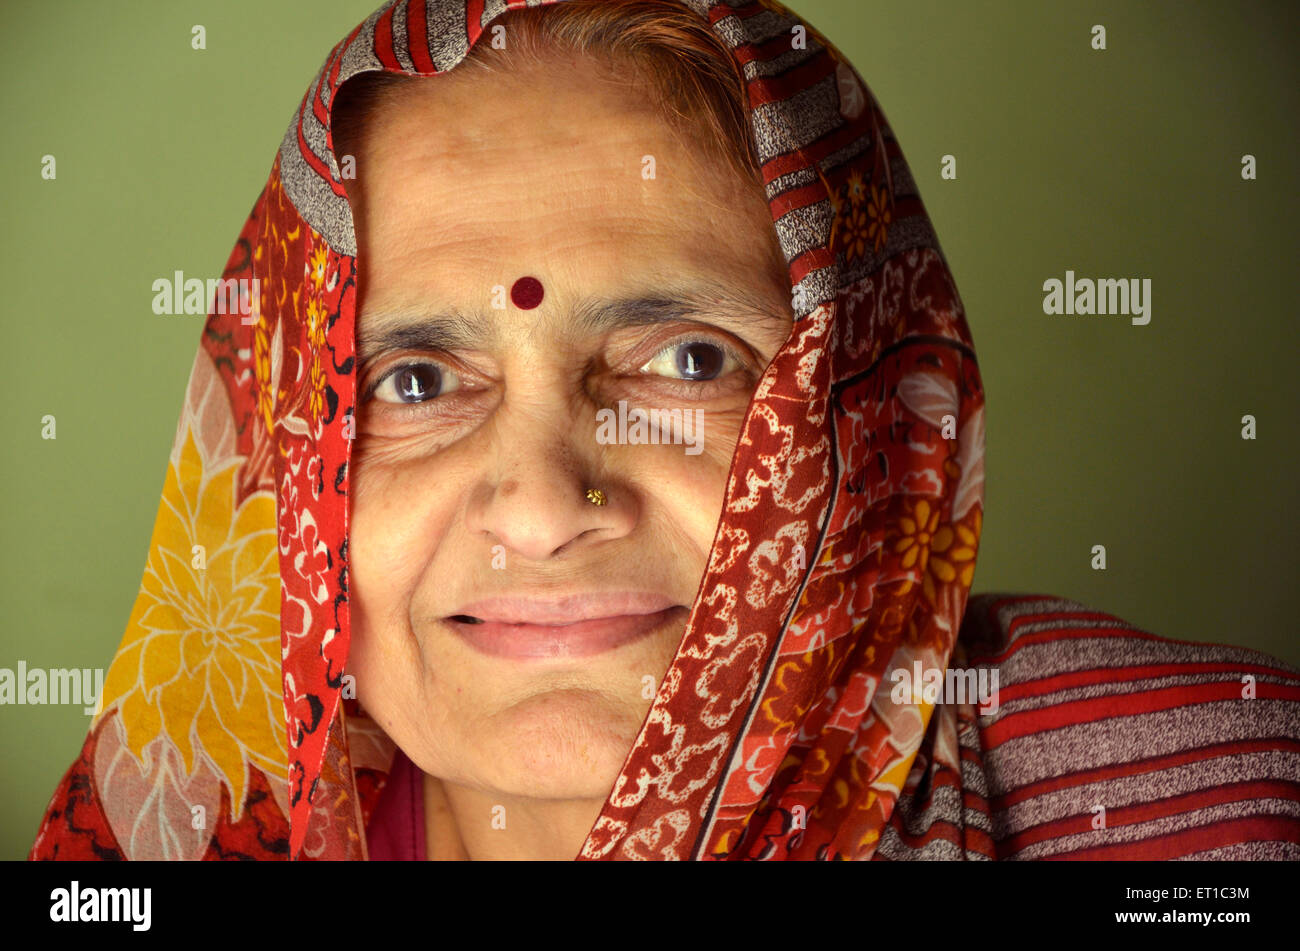 Indische alte Frau Porträt Jodhpur Rajasthan Indien Asien HERR#704 Stockfoto